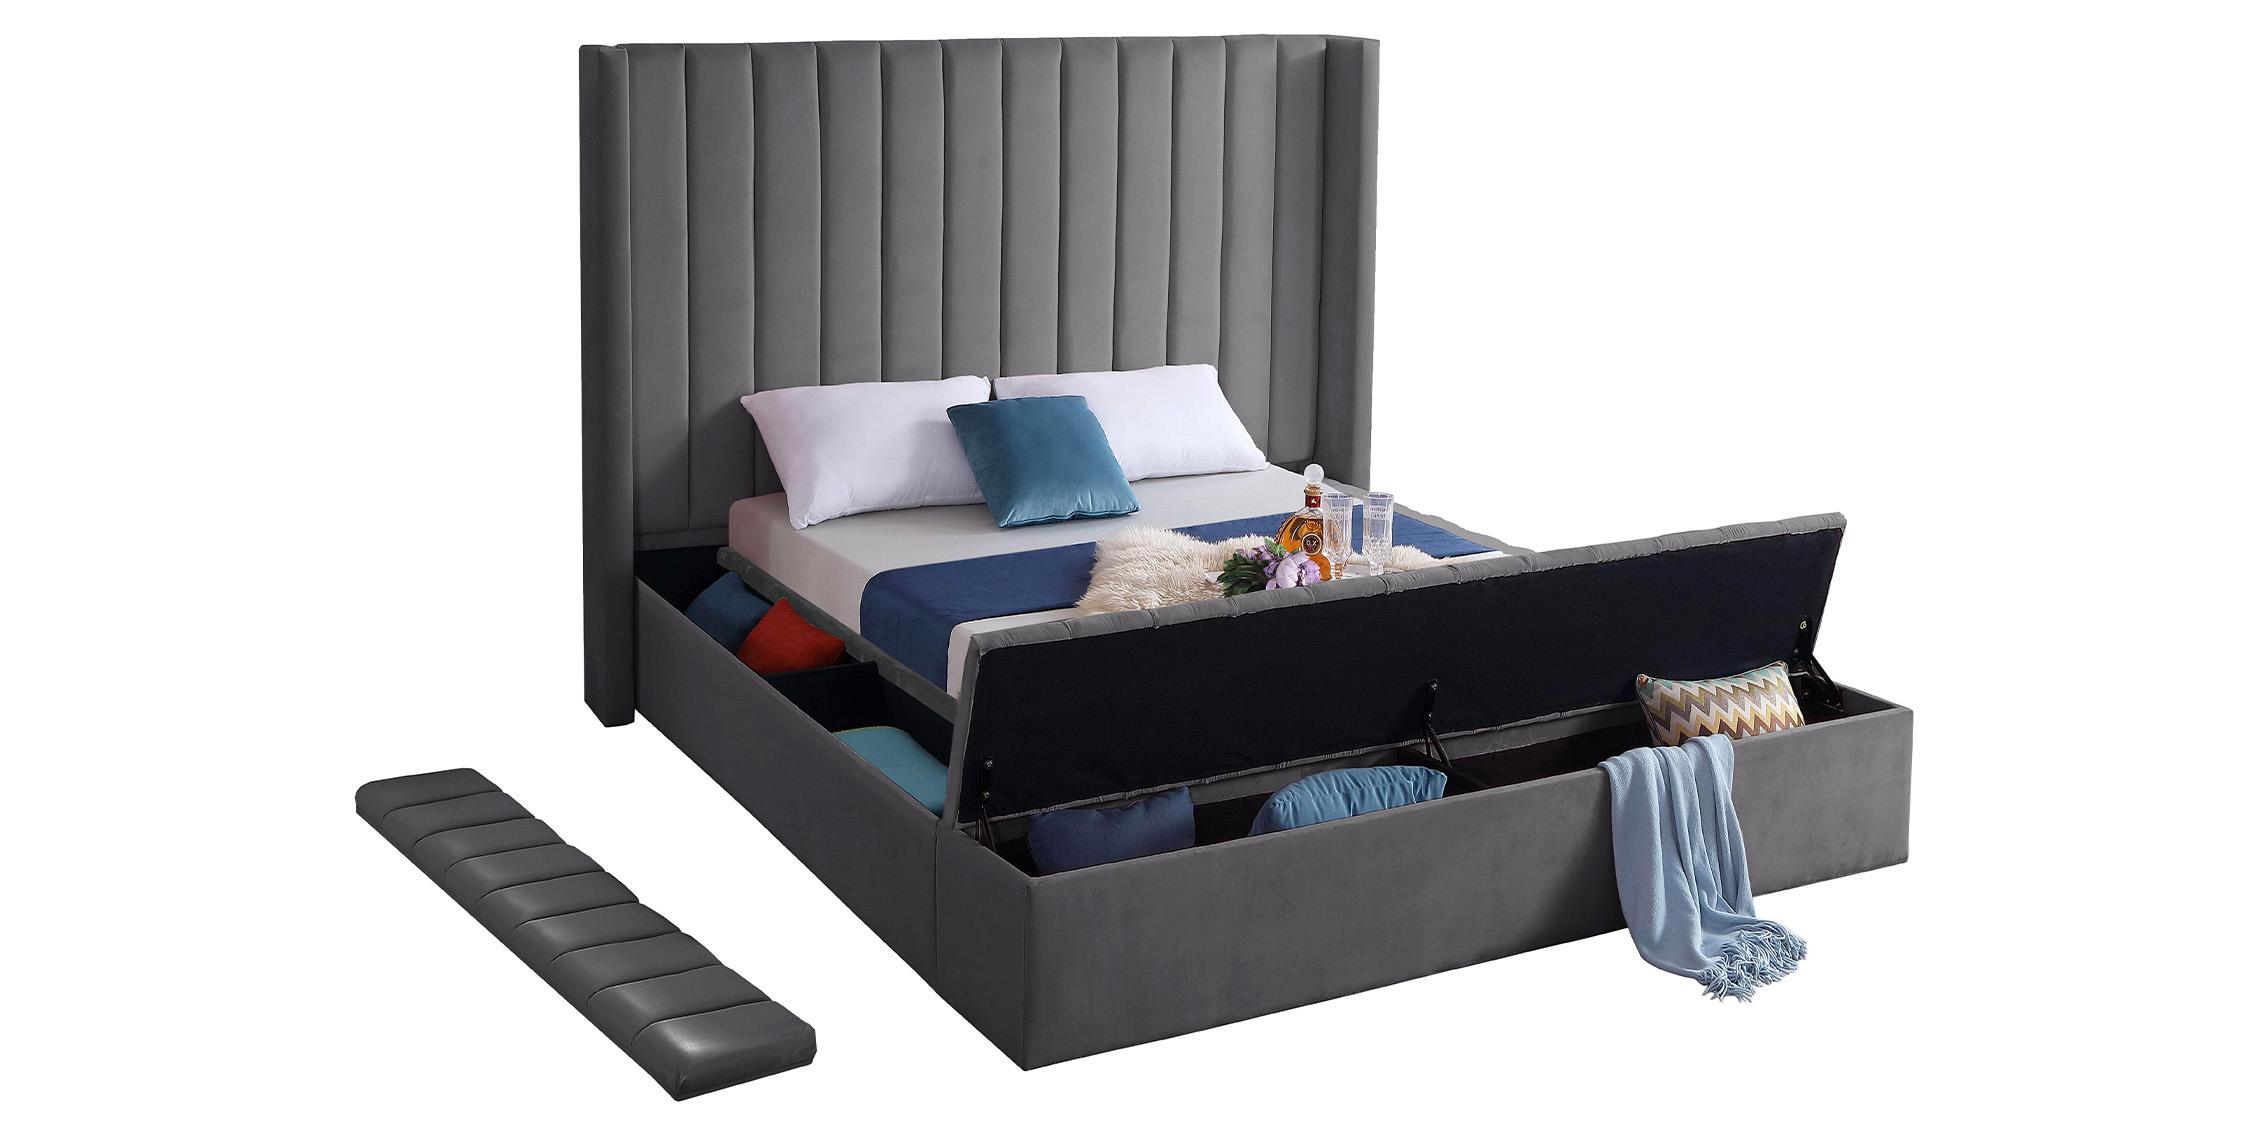 

    
KikiGrey-Q Grey Velvet Channel Tufted Storage Queen Bed KIKI Meridian Contemporary Modern
